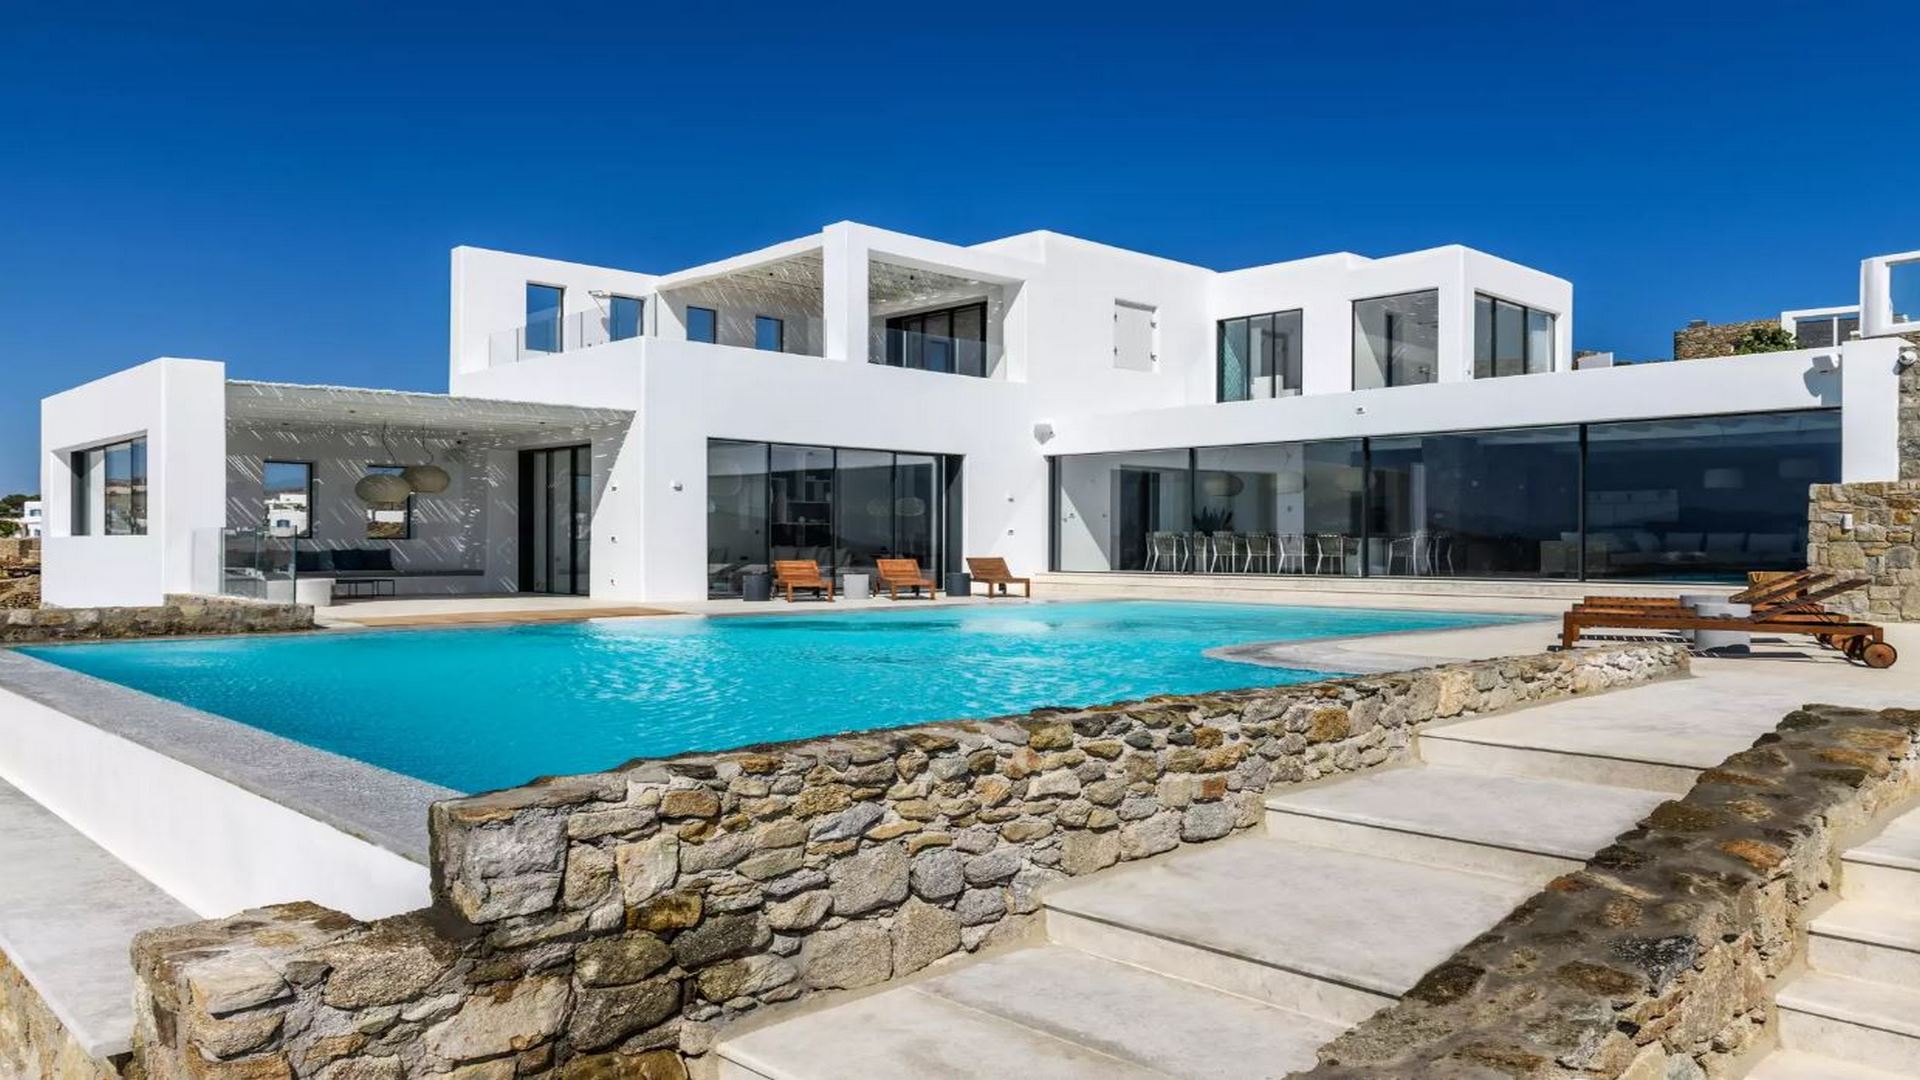 8-bdrm villa for rent in Mykonos